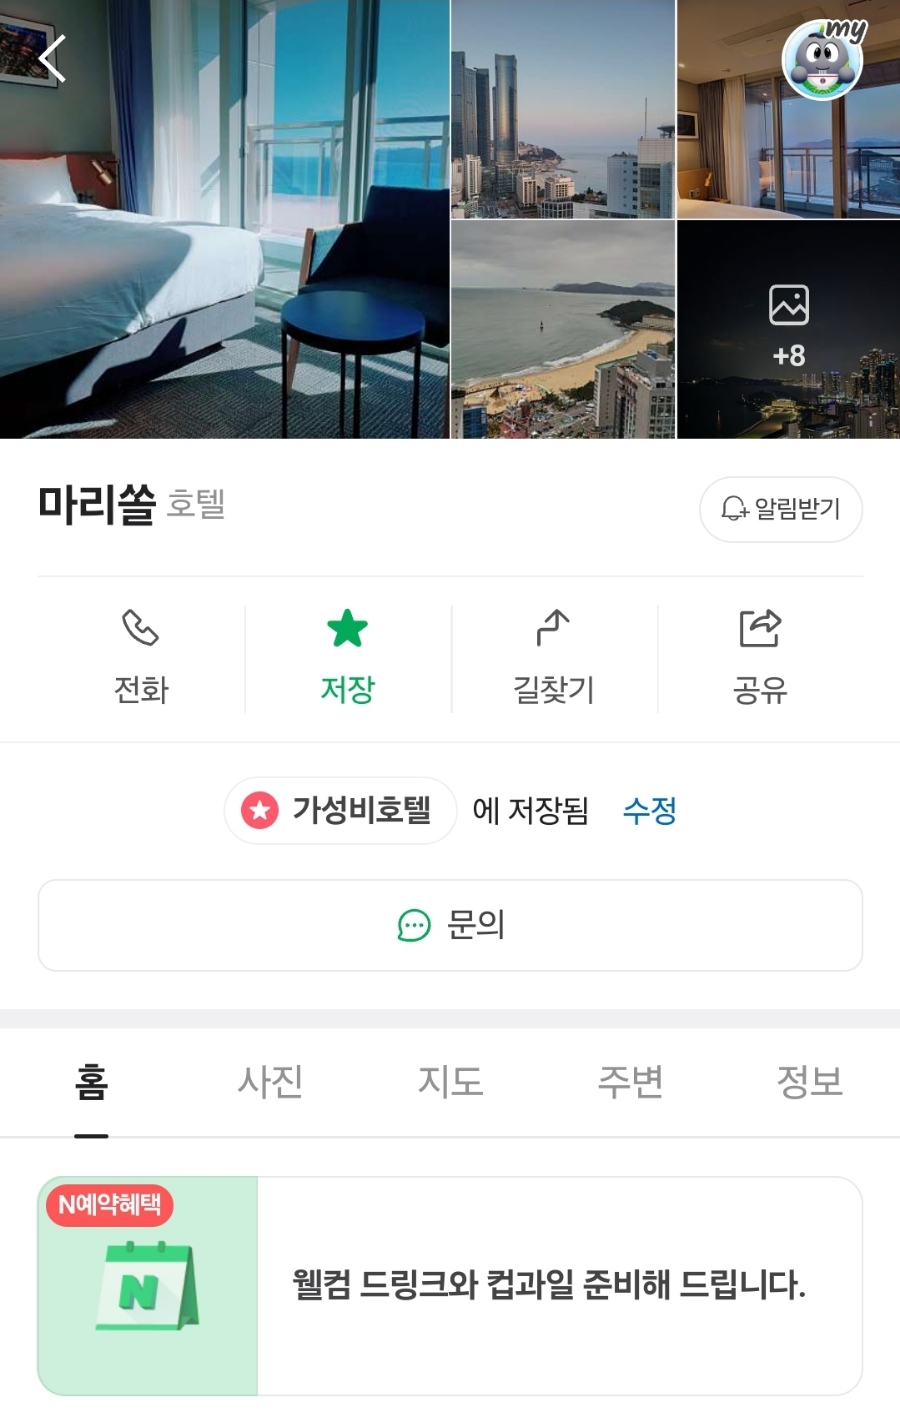 부산 해운대 가성비 호텔 마리쏠에서 오션뷰 감성혼박(혼자 숙박)